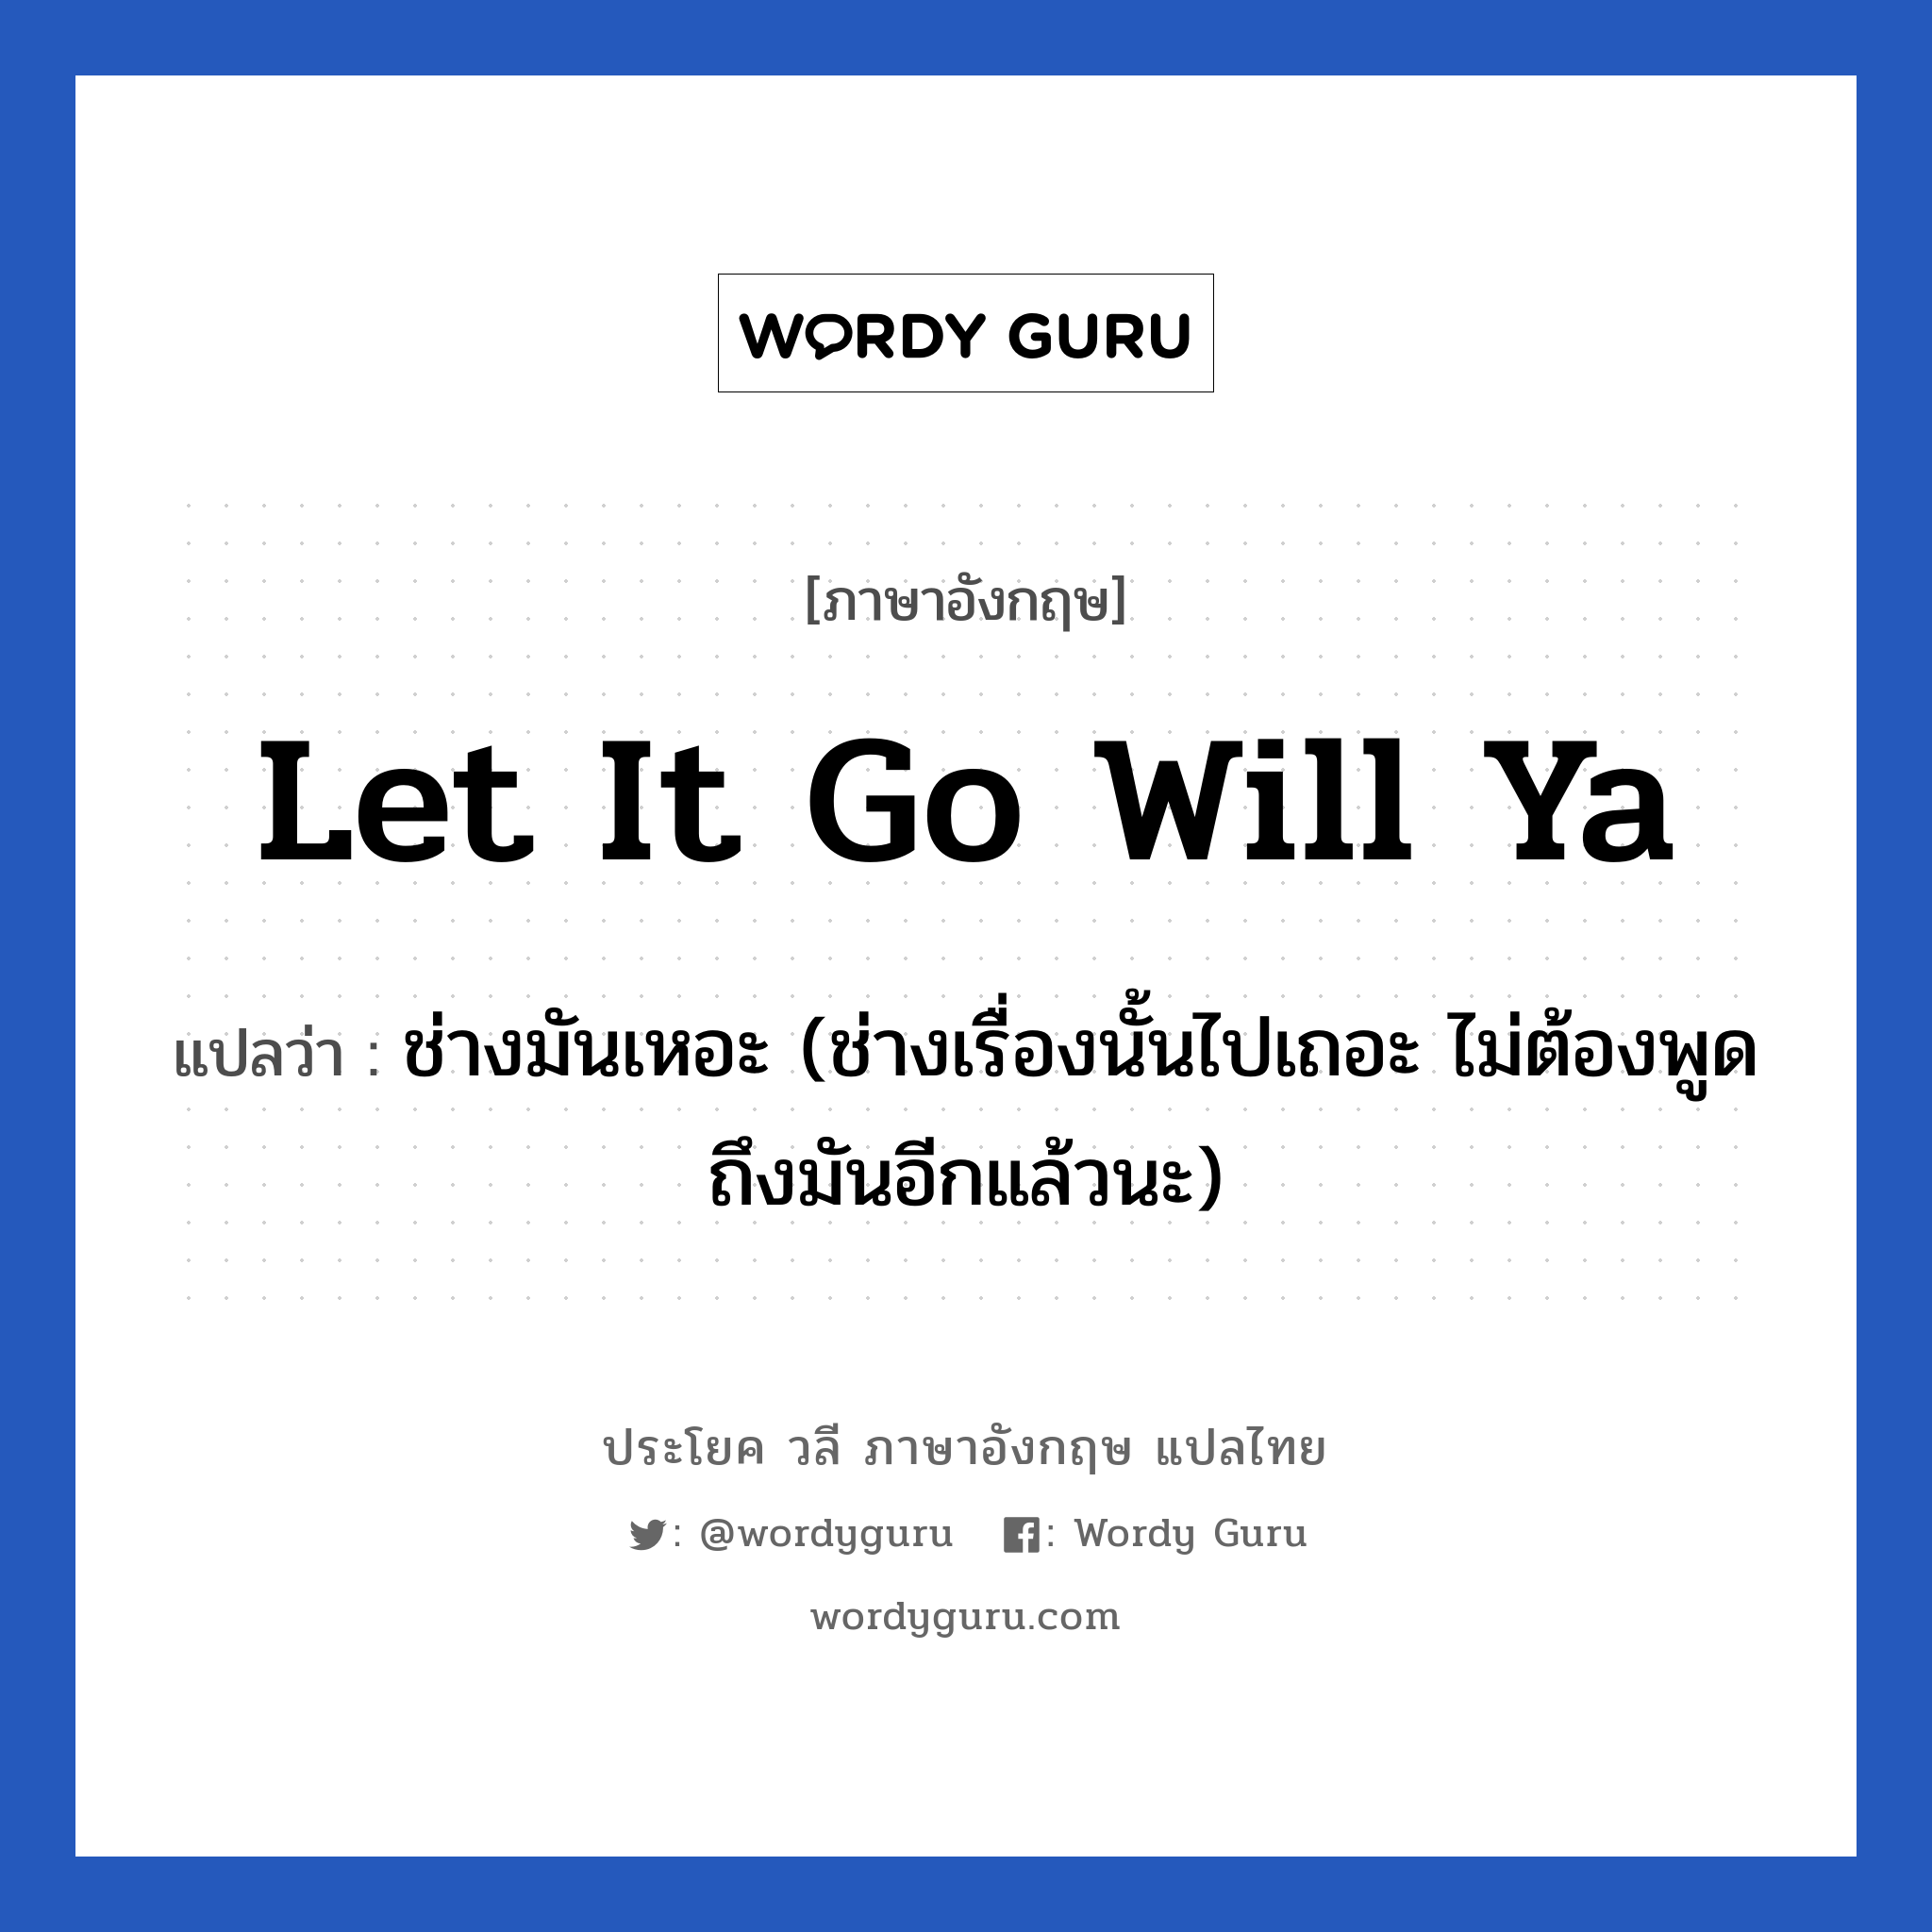 Let it go will ya แปลว่า?, วลีภาษาอังกฤษ Let it go will ya แปลว่า ช่างมันเหอะ (ช่างเรื่องนั้นไปเถอะ ไม่ต้องพูดถึงมันอีกแล้วนะ)